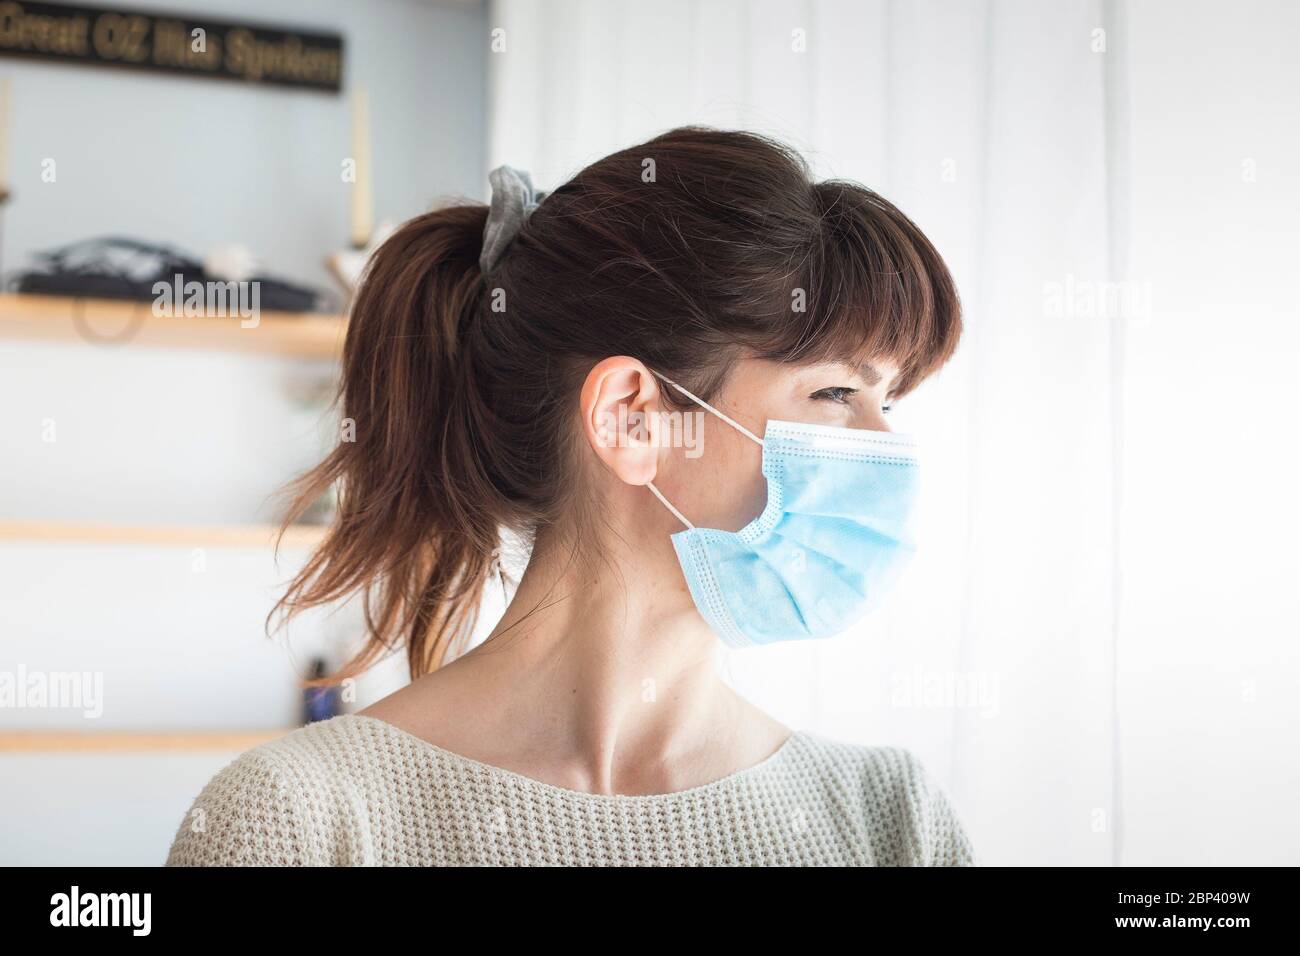 Femme caucasienne attirante avec queue de cheval et bangs, portant un masque chirurgical bleu pendant une pandémie de covid-19 ou de coronavirus. Portrait de profil. Banque D'Images